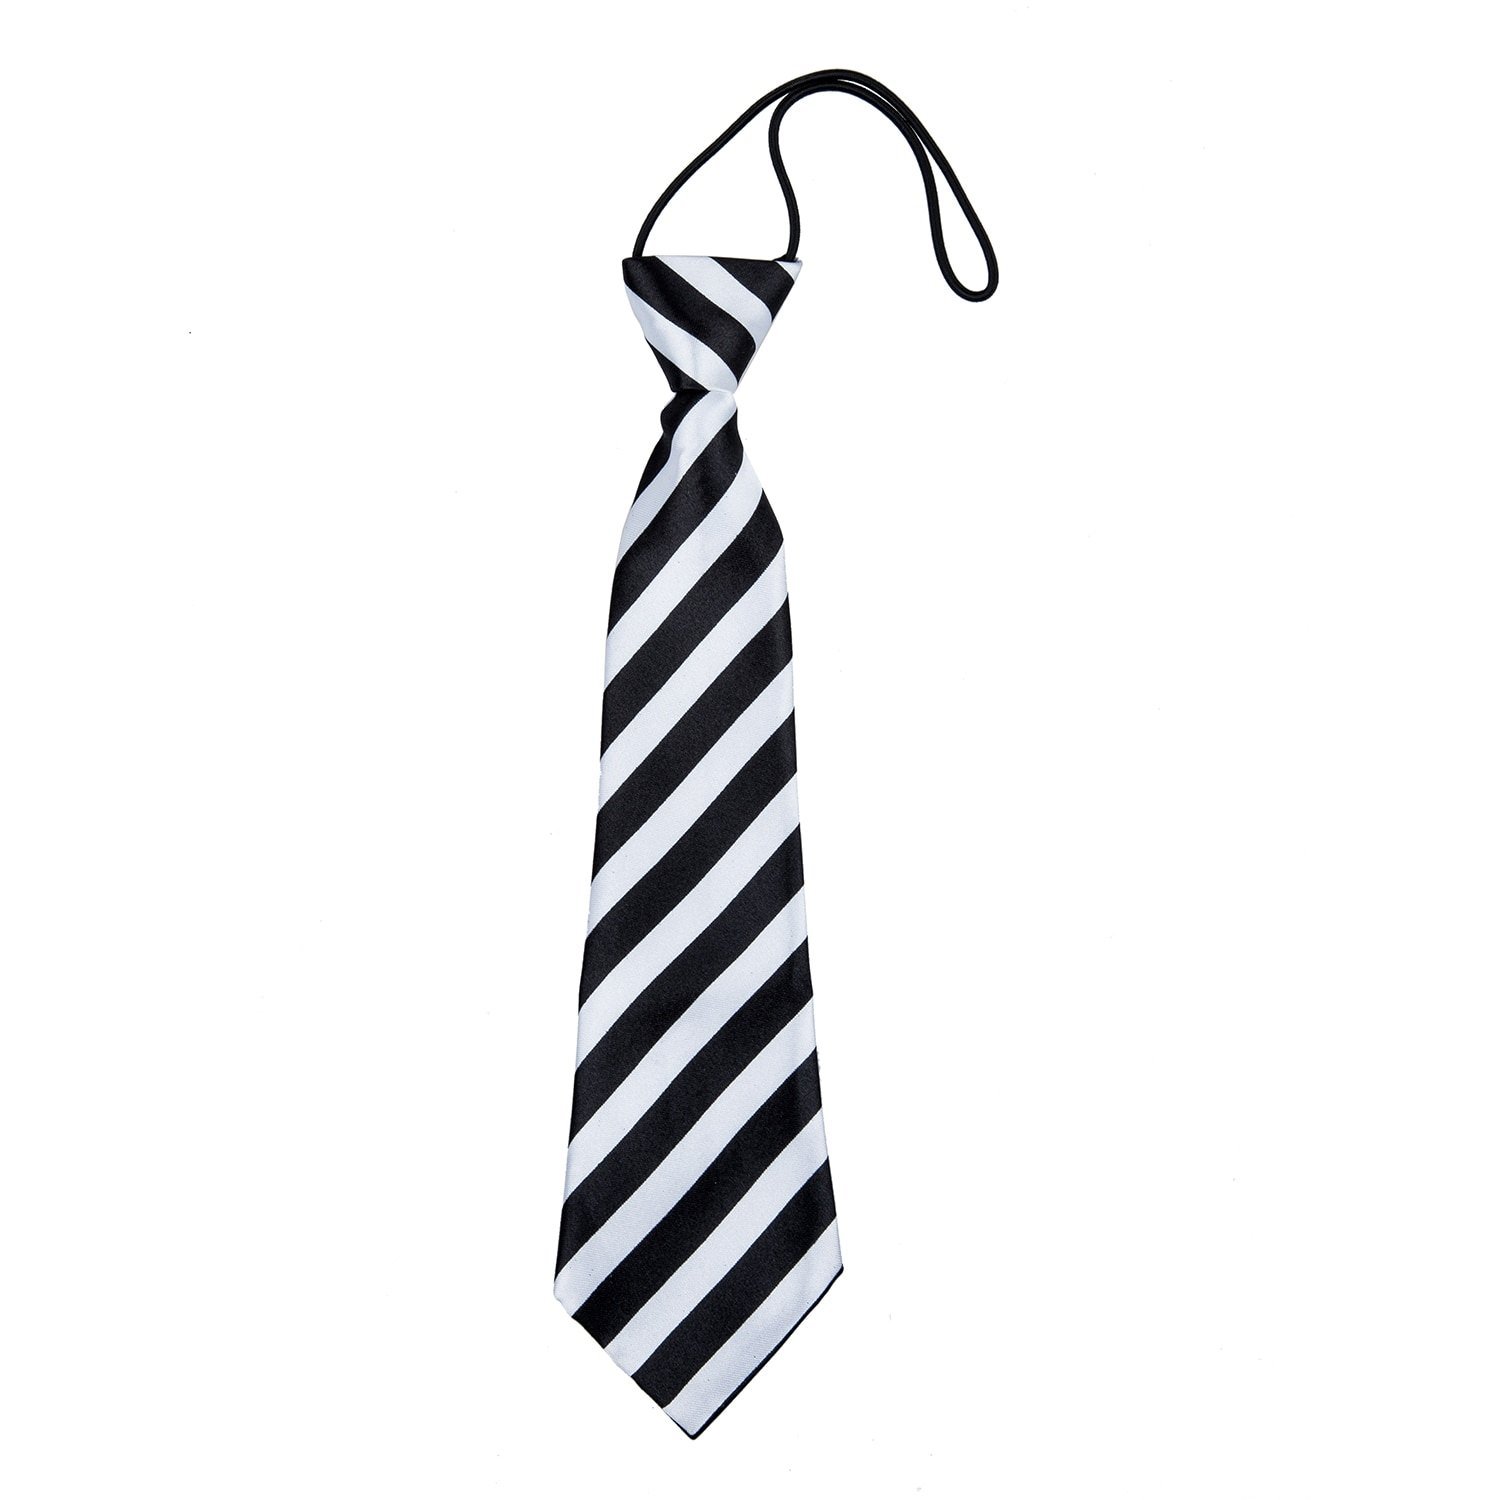 Картинка галстук мужской. Галстук. Черно белый галстук. Галстук для детей. Галстук в черно белую полоску.